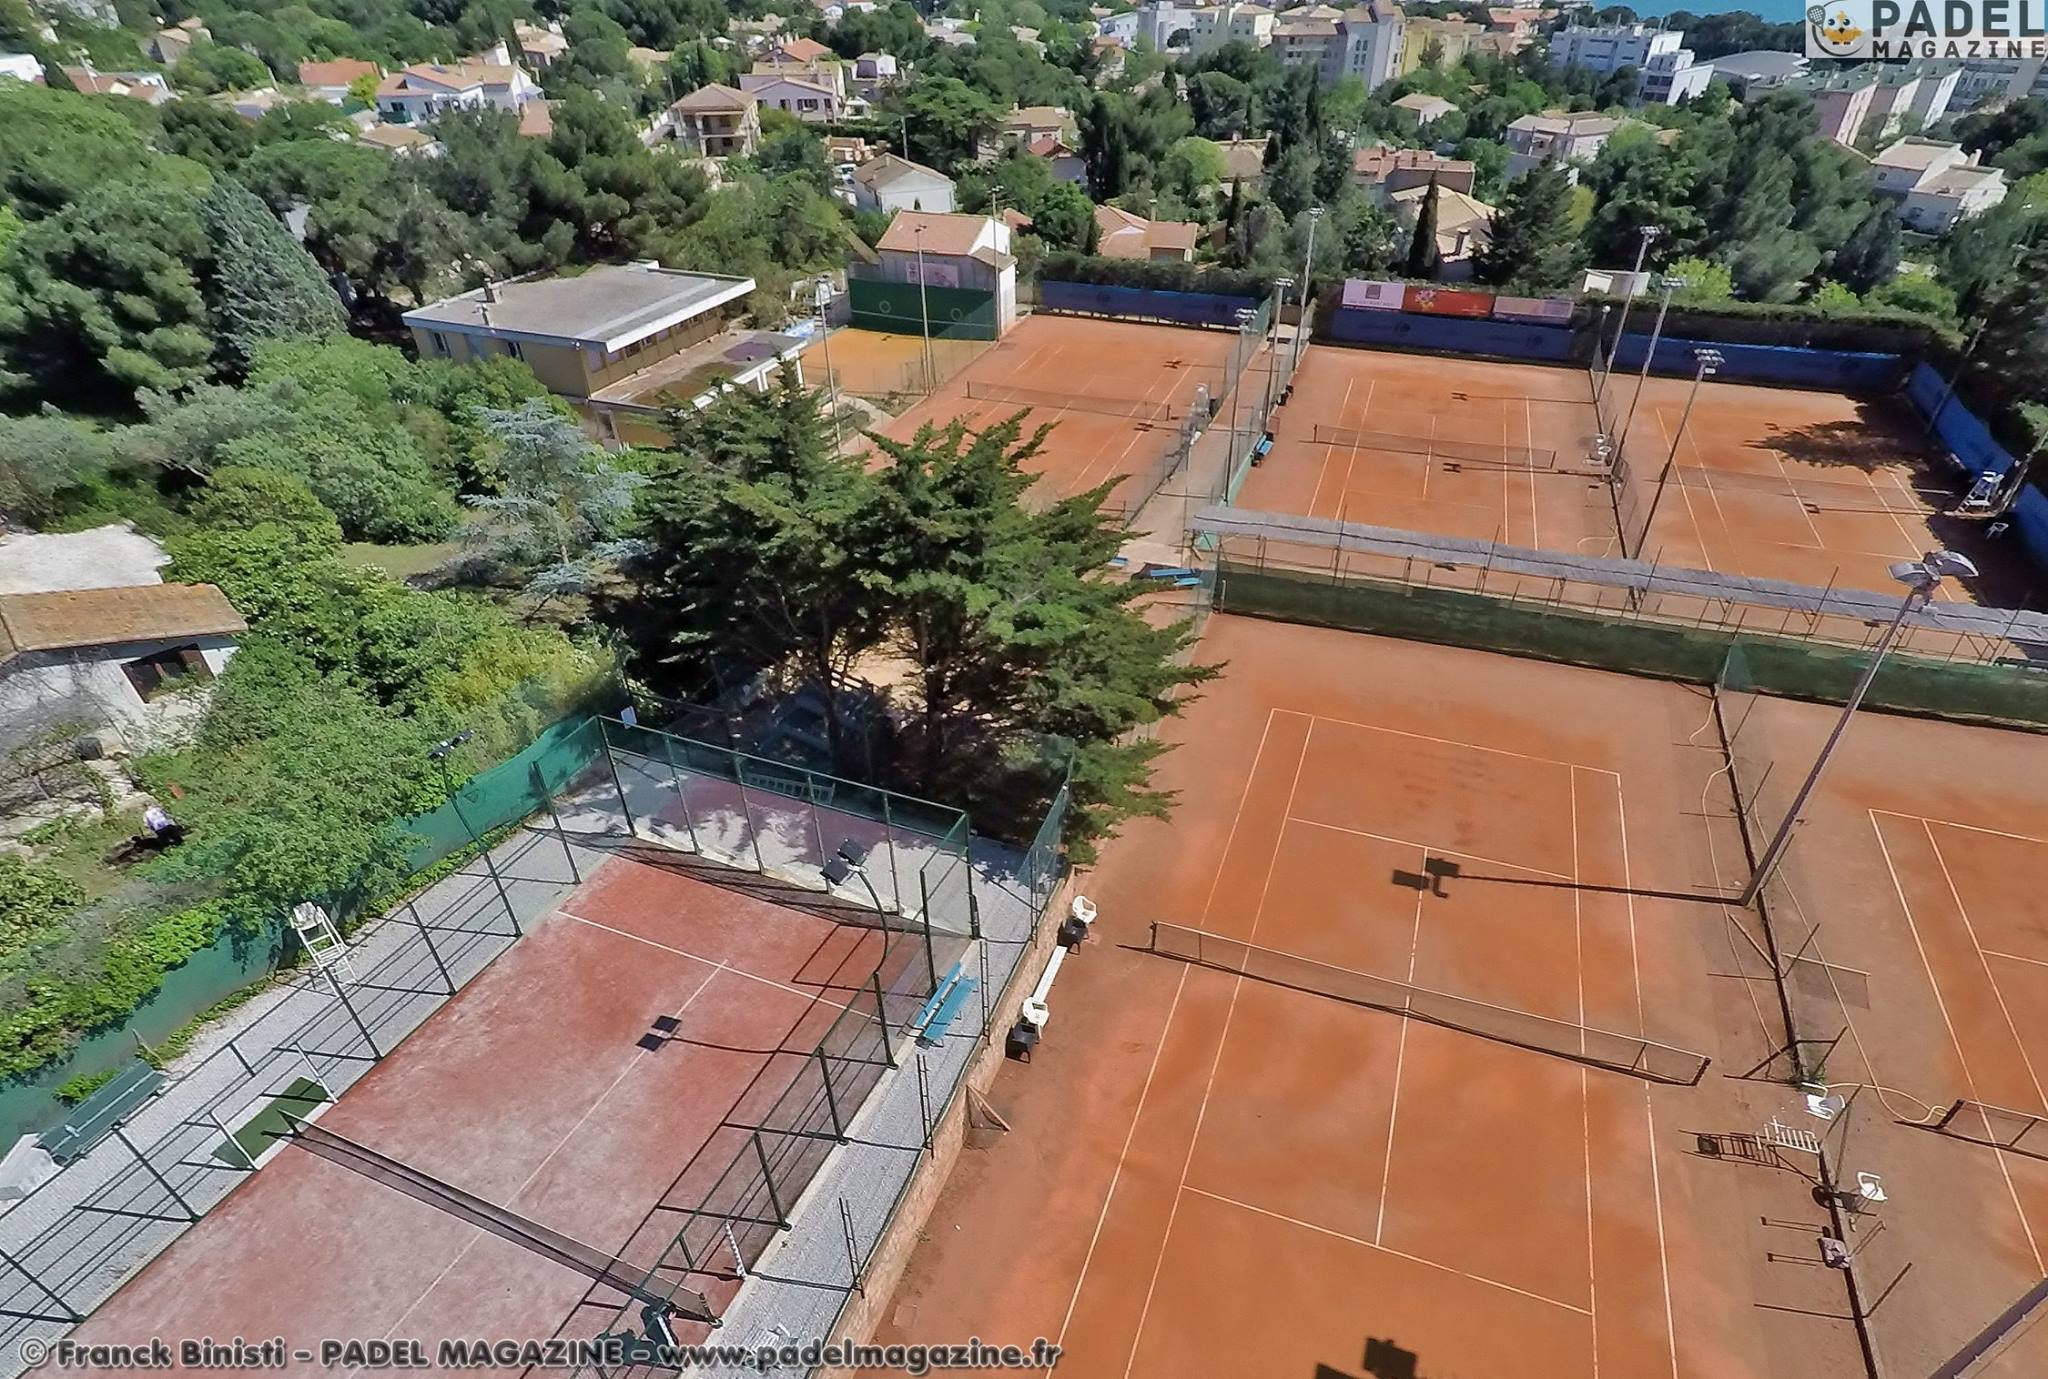 Il Sète Tennis Club ha l'ambizione di fare di più